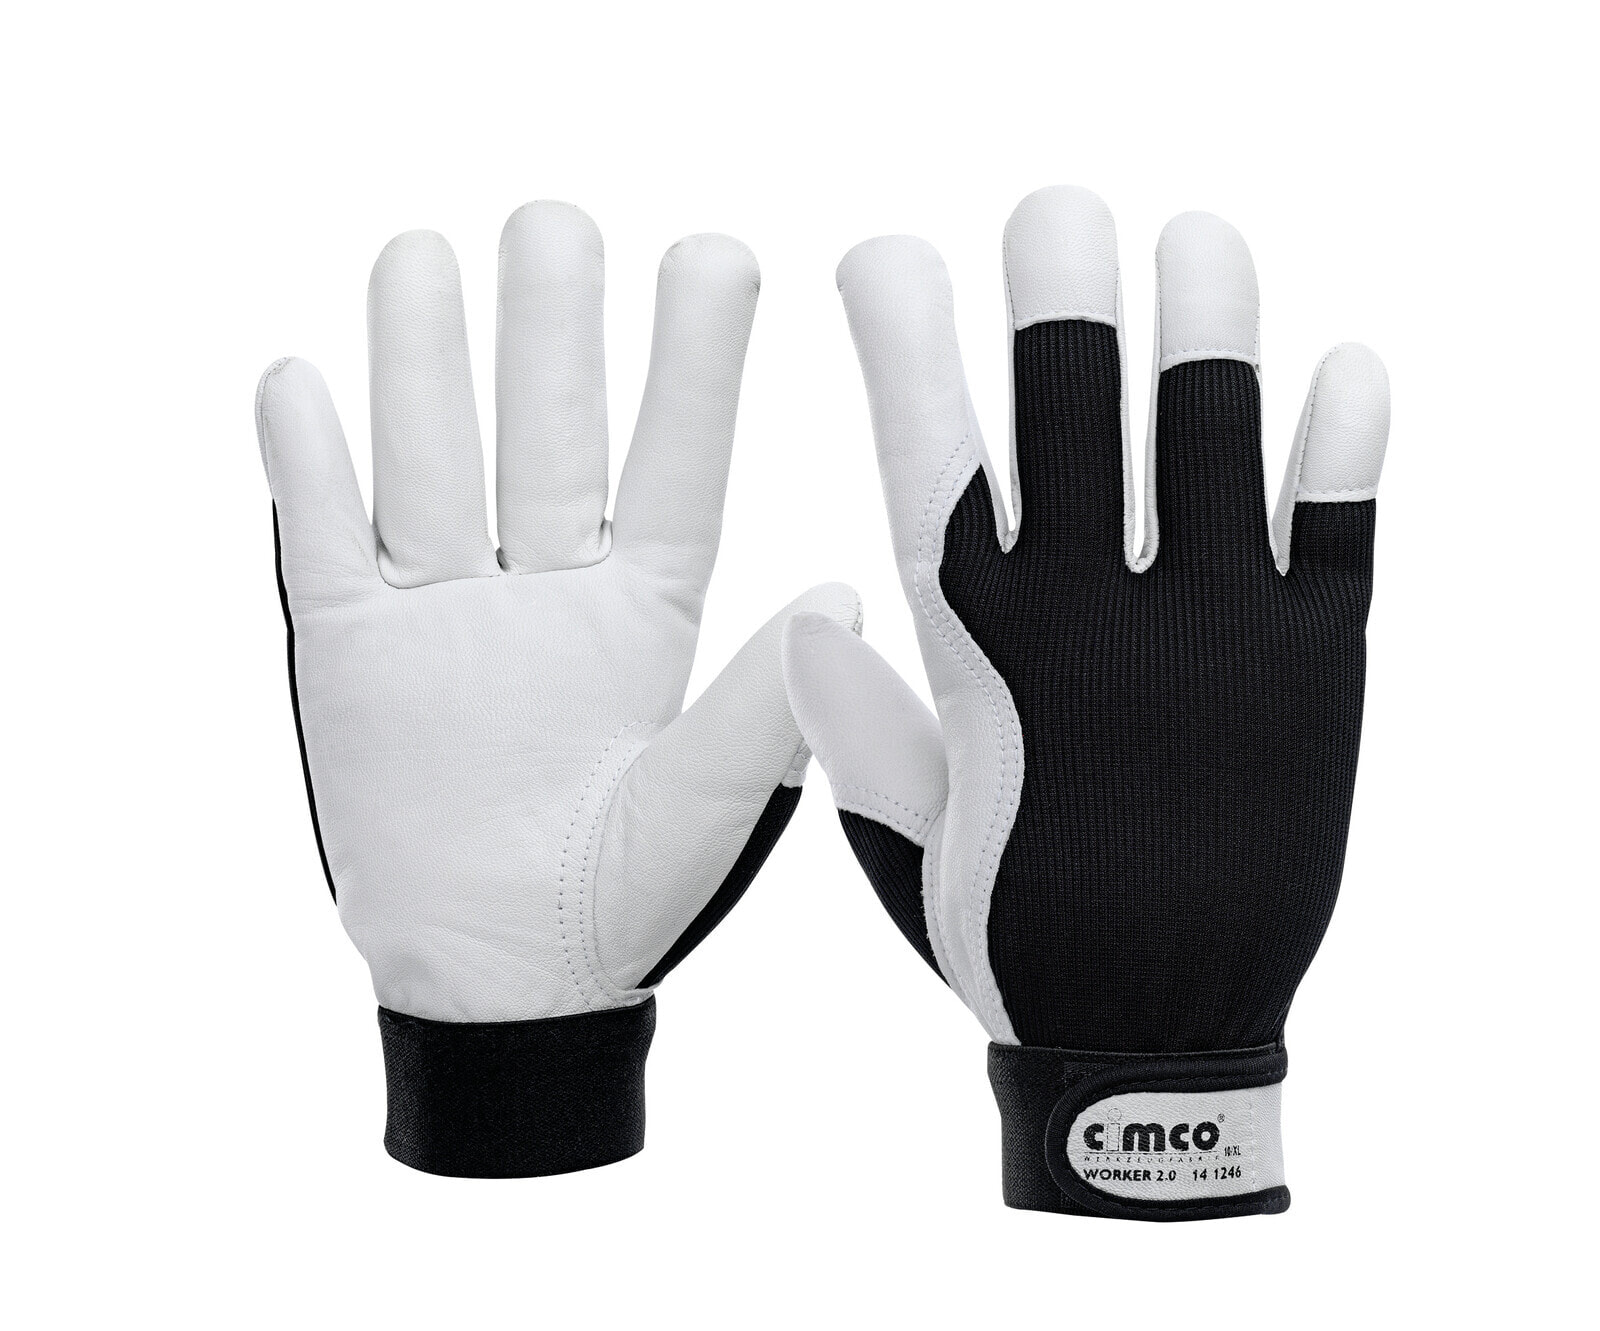 141245 - Workshop gloves - Black - White - L - EUE - Adult - Unisex